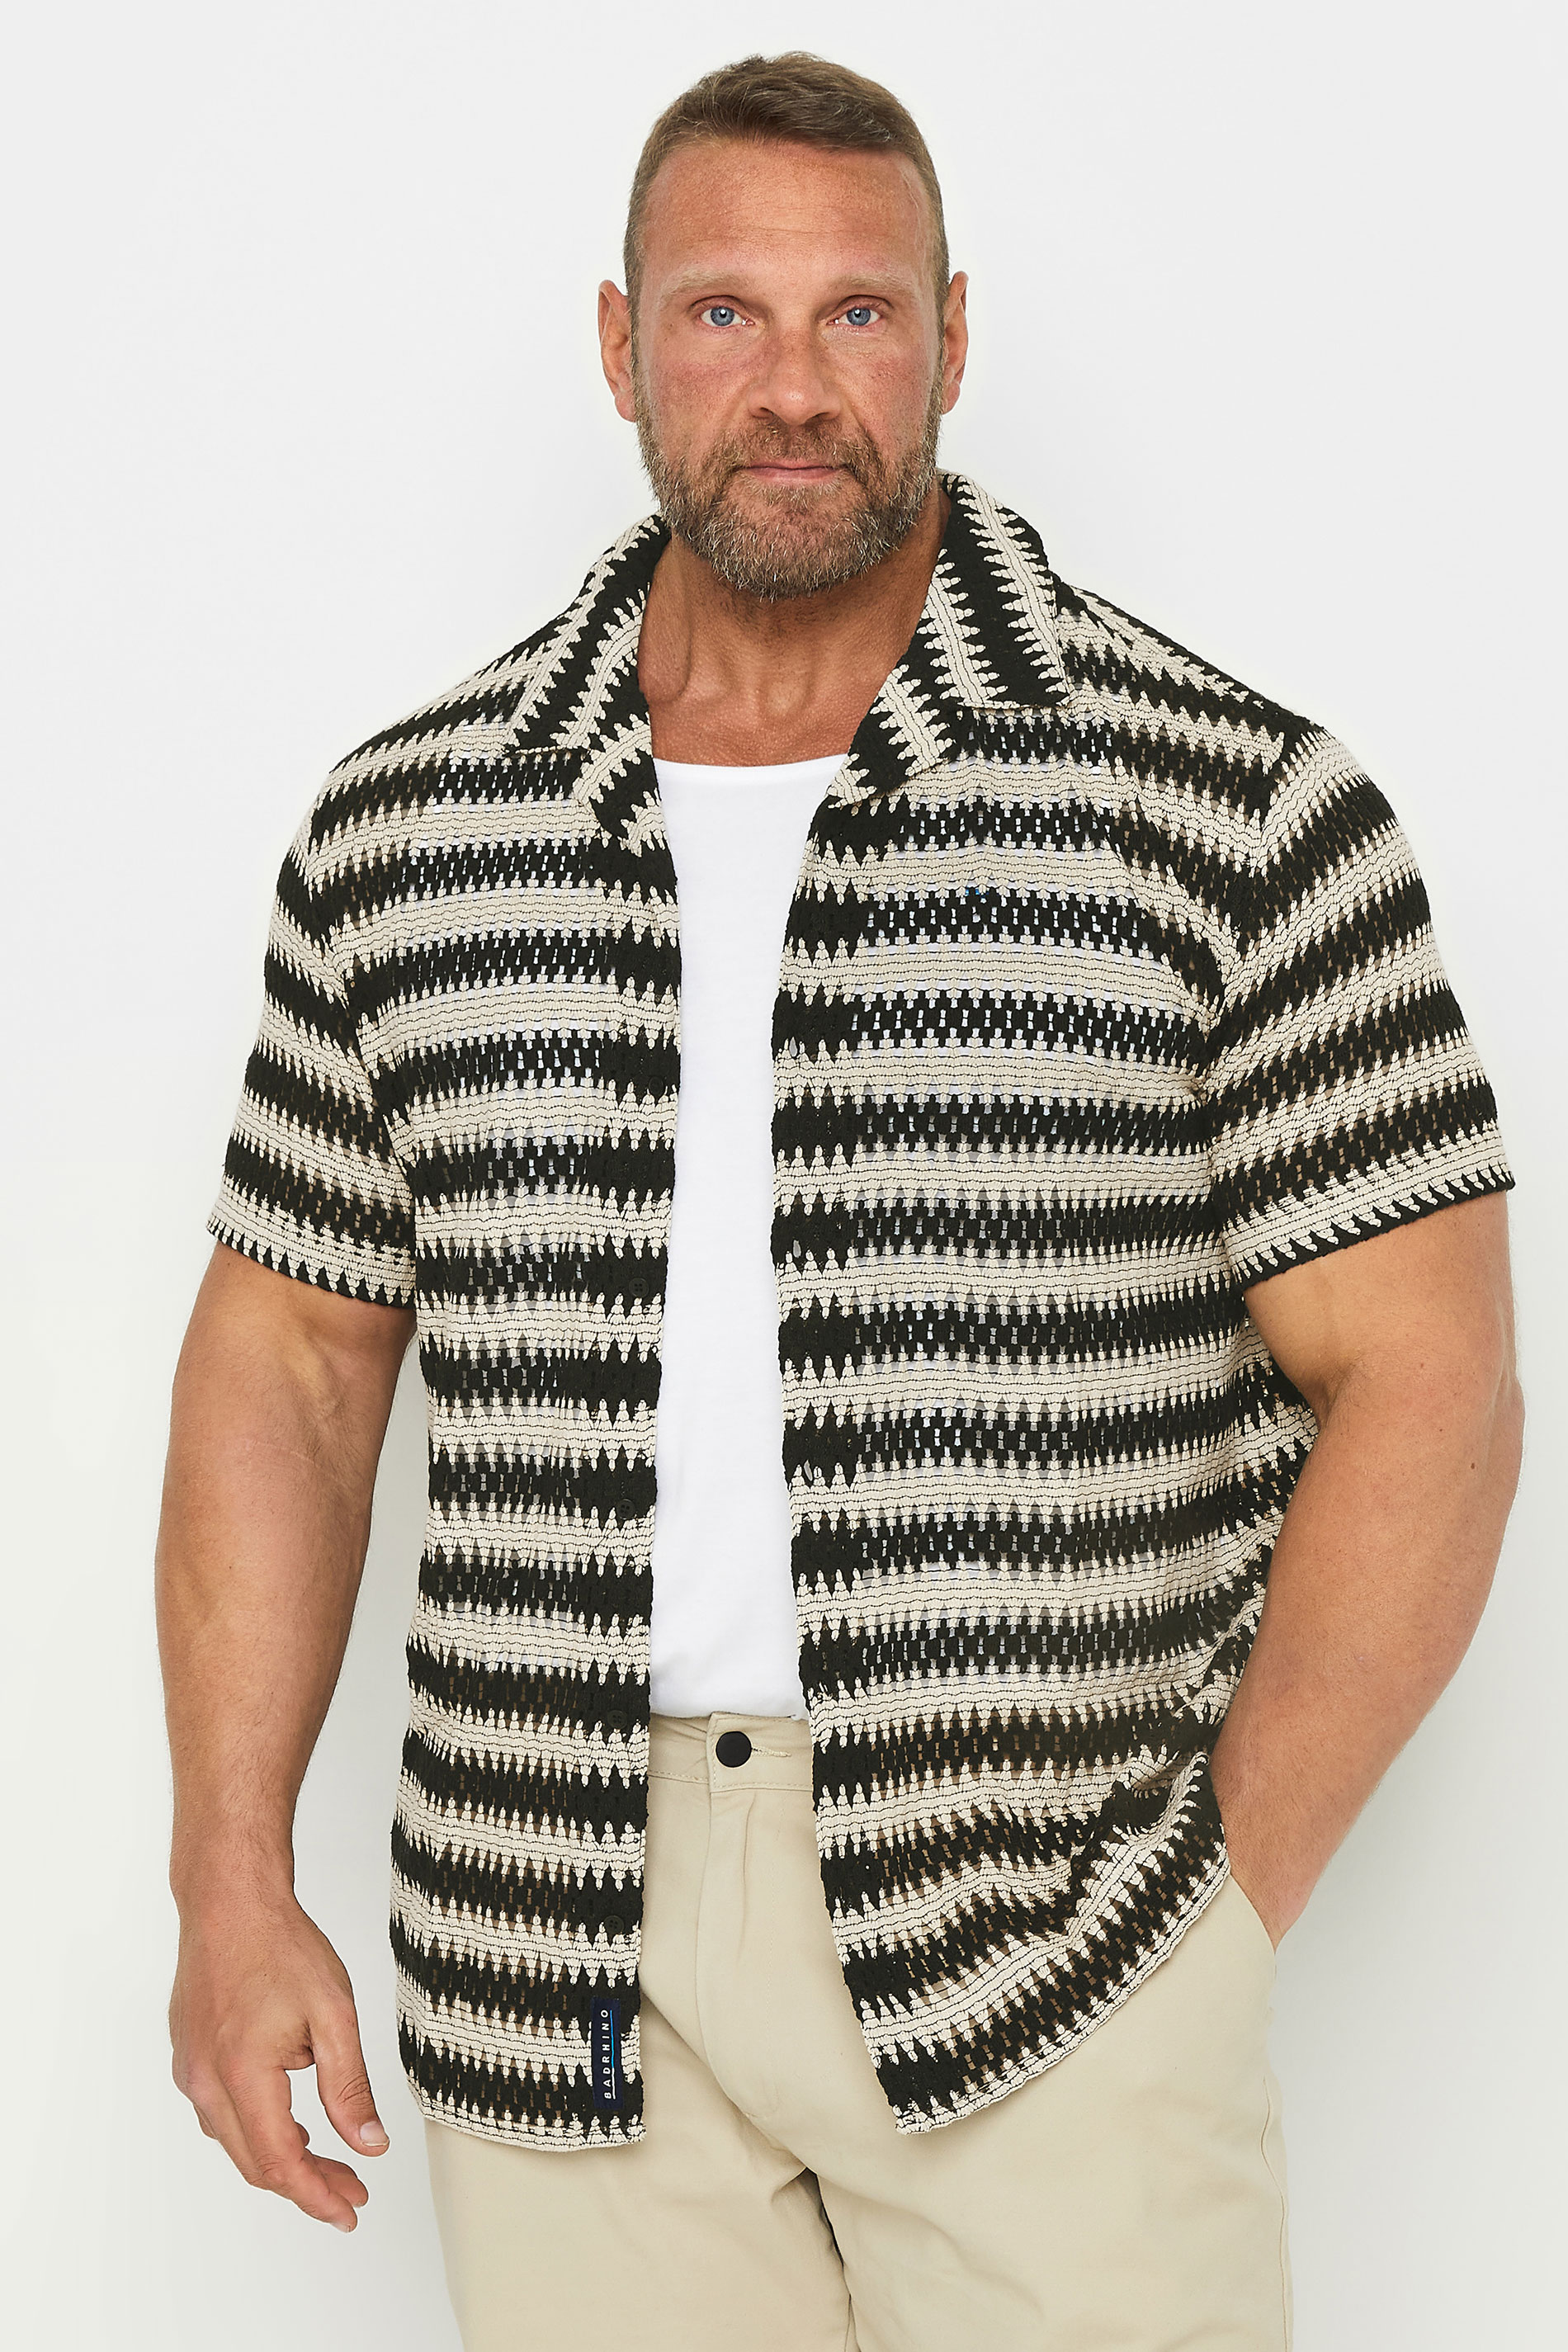 BadRhino Big & Tall Black Textured Crochet Short Sleeve Shirt | BadRhino 2